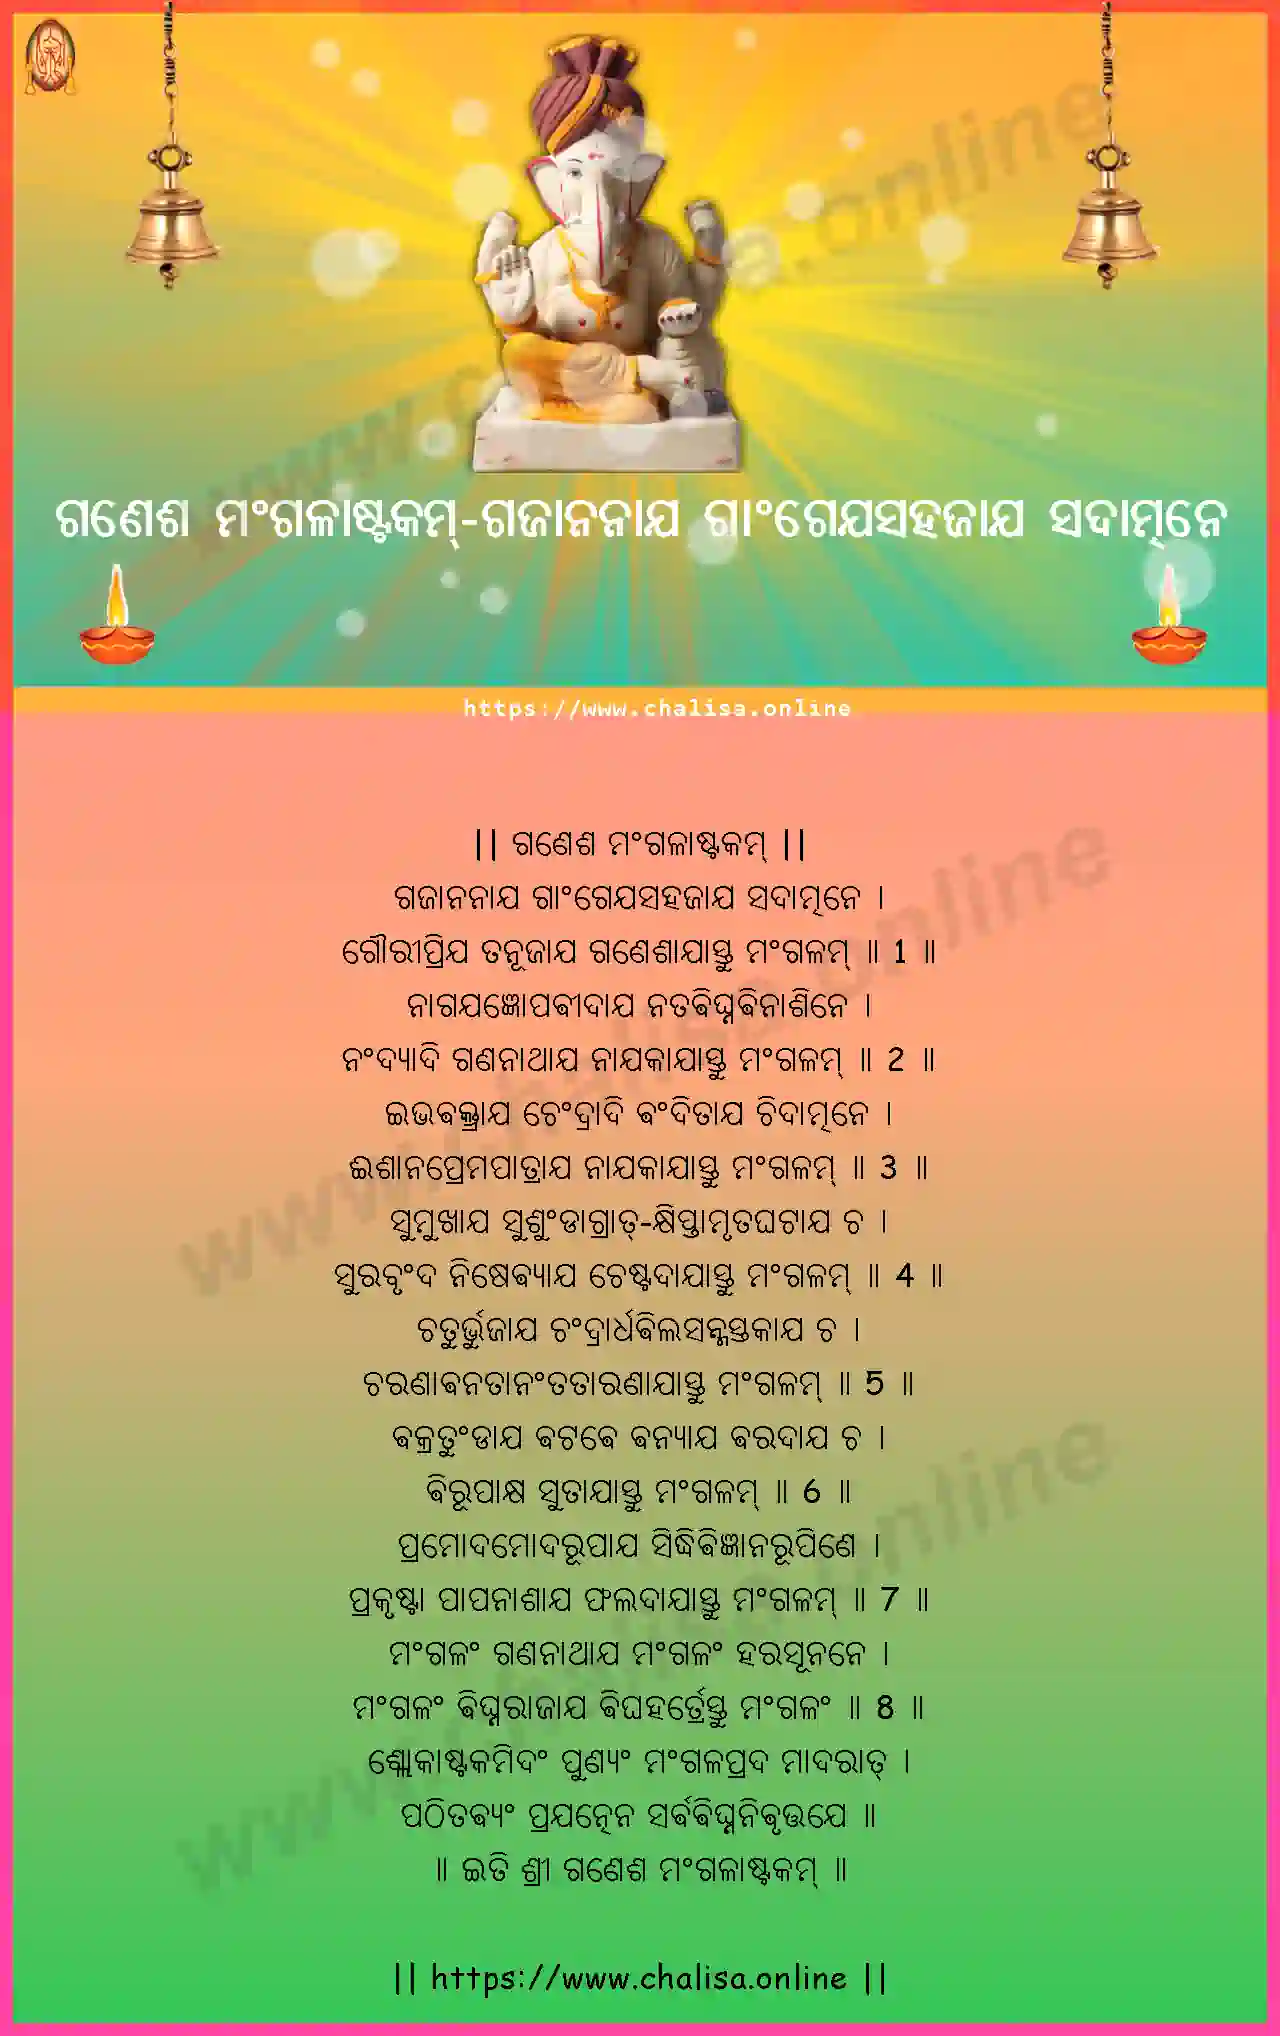 gajananaya-gangeyasahajaya-ganesha-mangalashtakam-oriya-oriya-lyrics-download